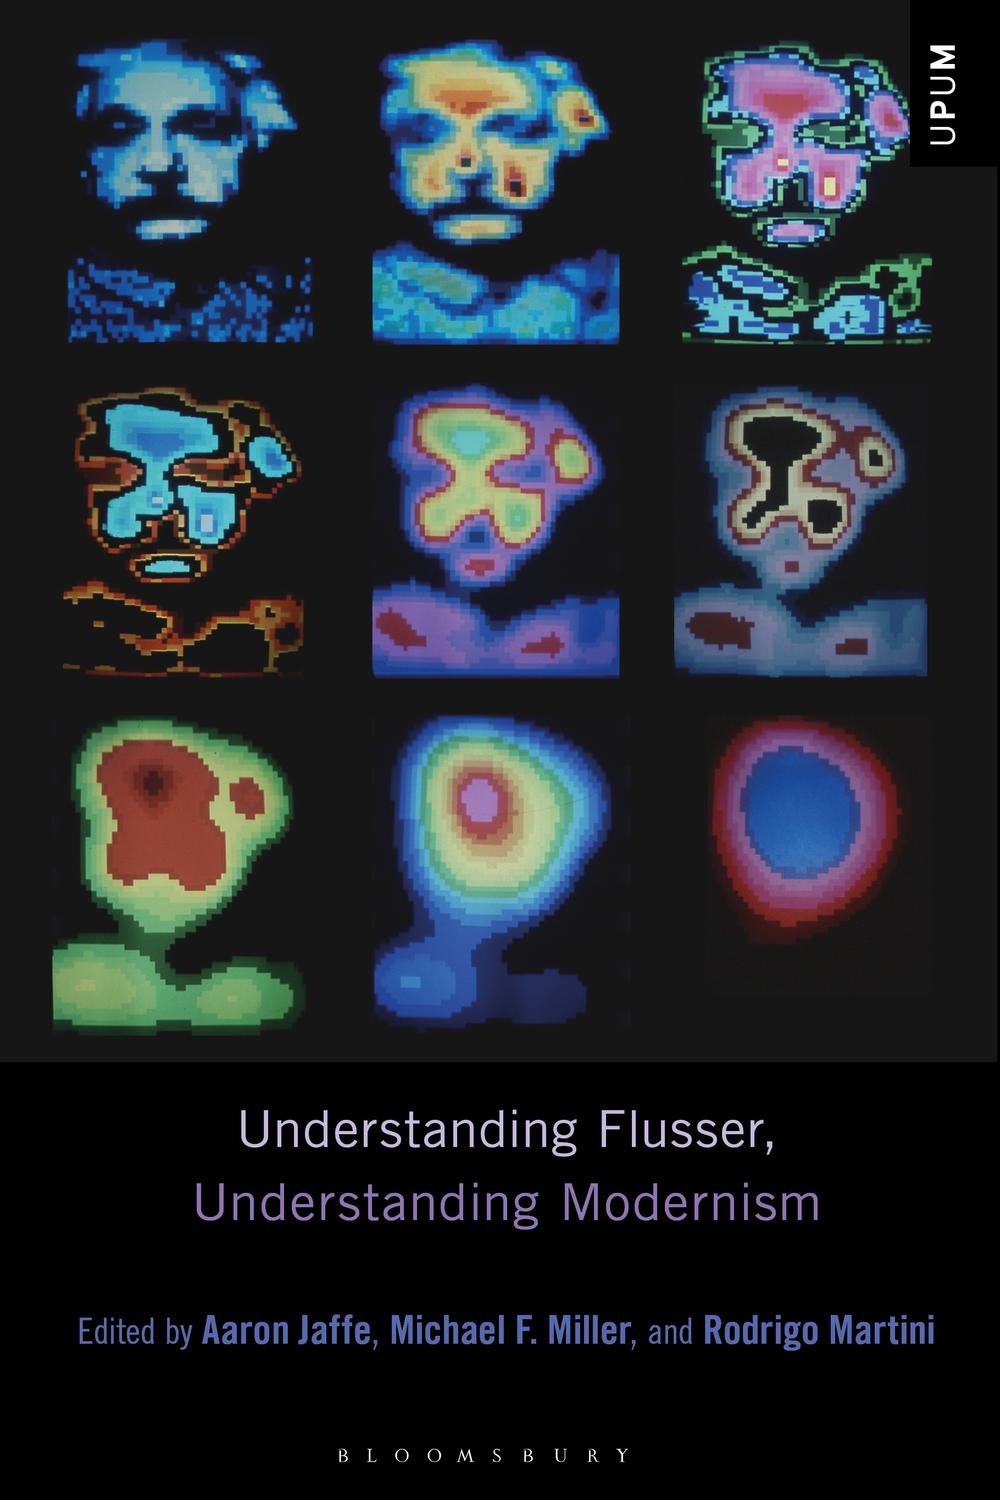 Understanding Flusser, Understanding Modernism - Aaron Jaffe, Michael F. Miller, Rodrigo Martini